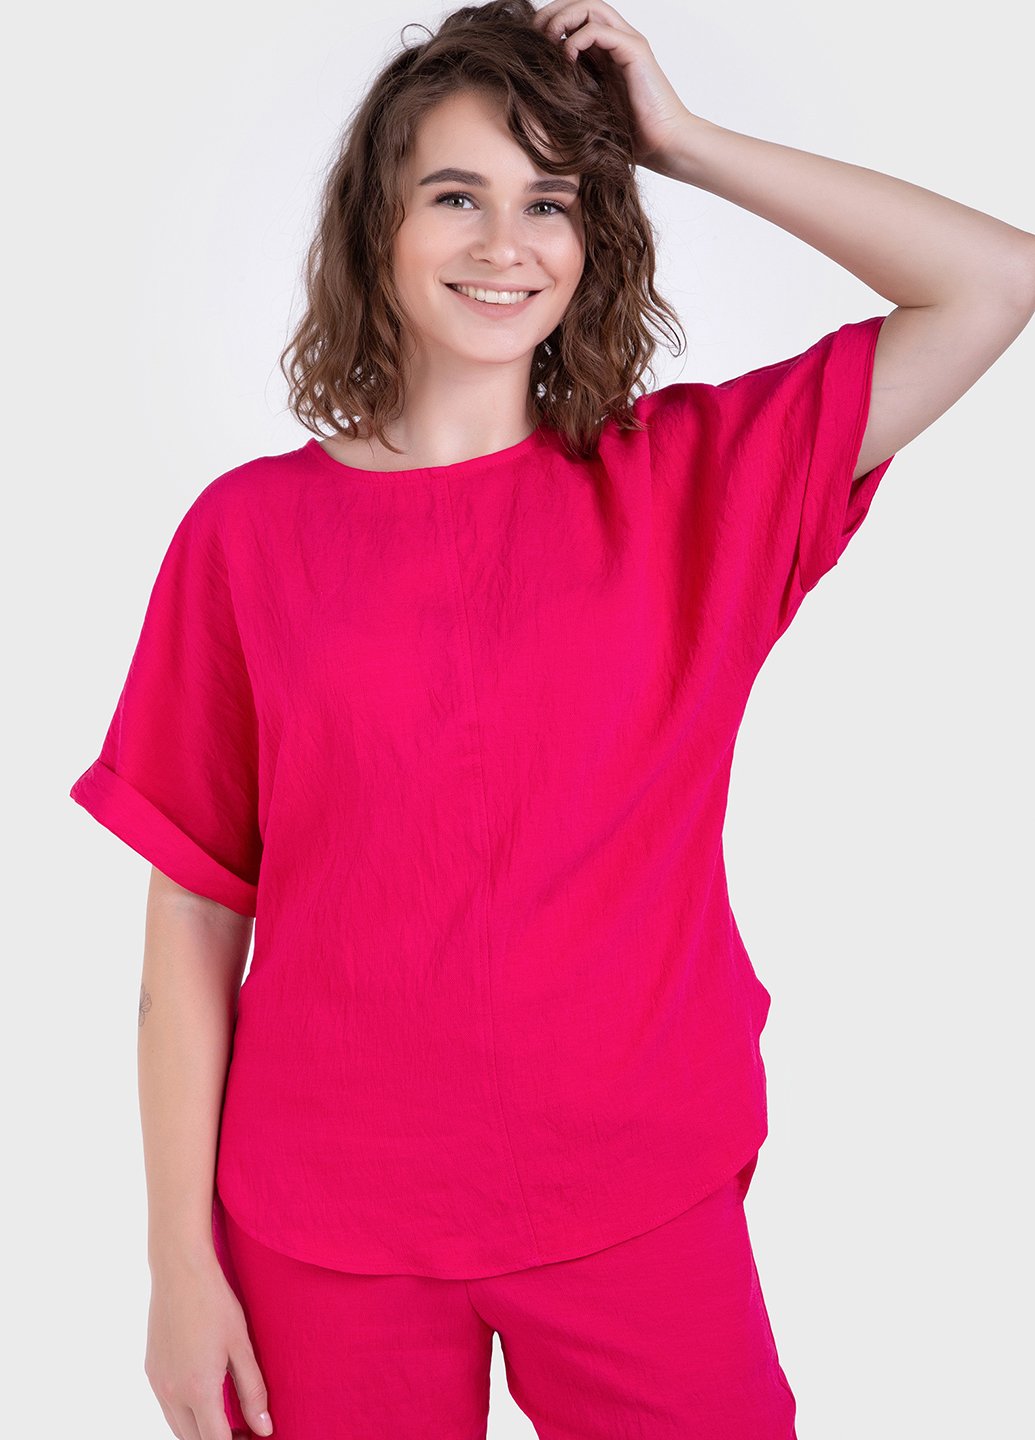 Купить Оверсайз футболка женская малинового цвета из льна-жатки Merlini Салерно 800000046, размер 42-44 в интернет-магазине